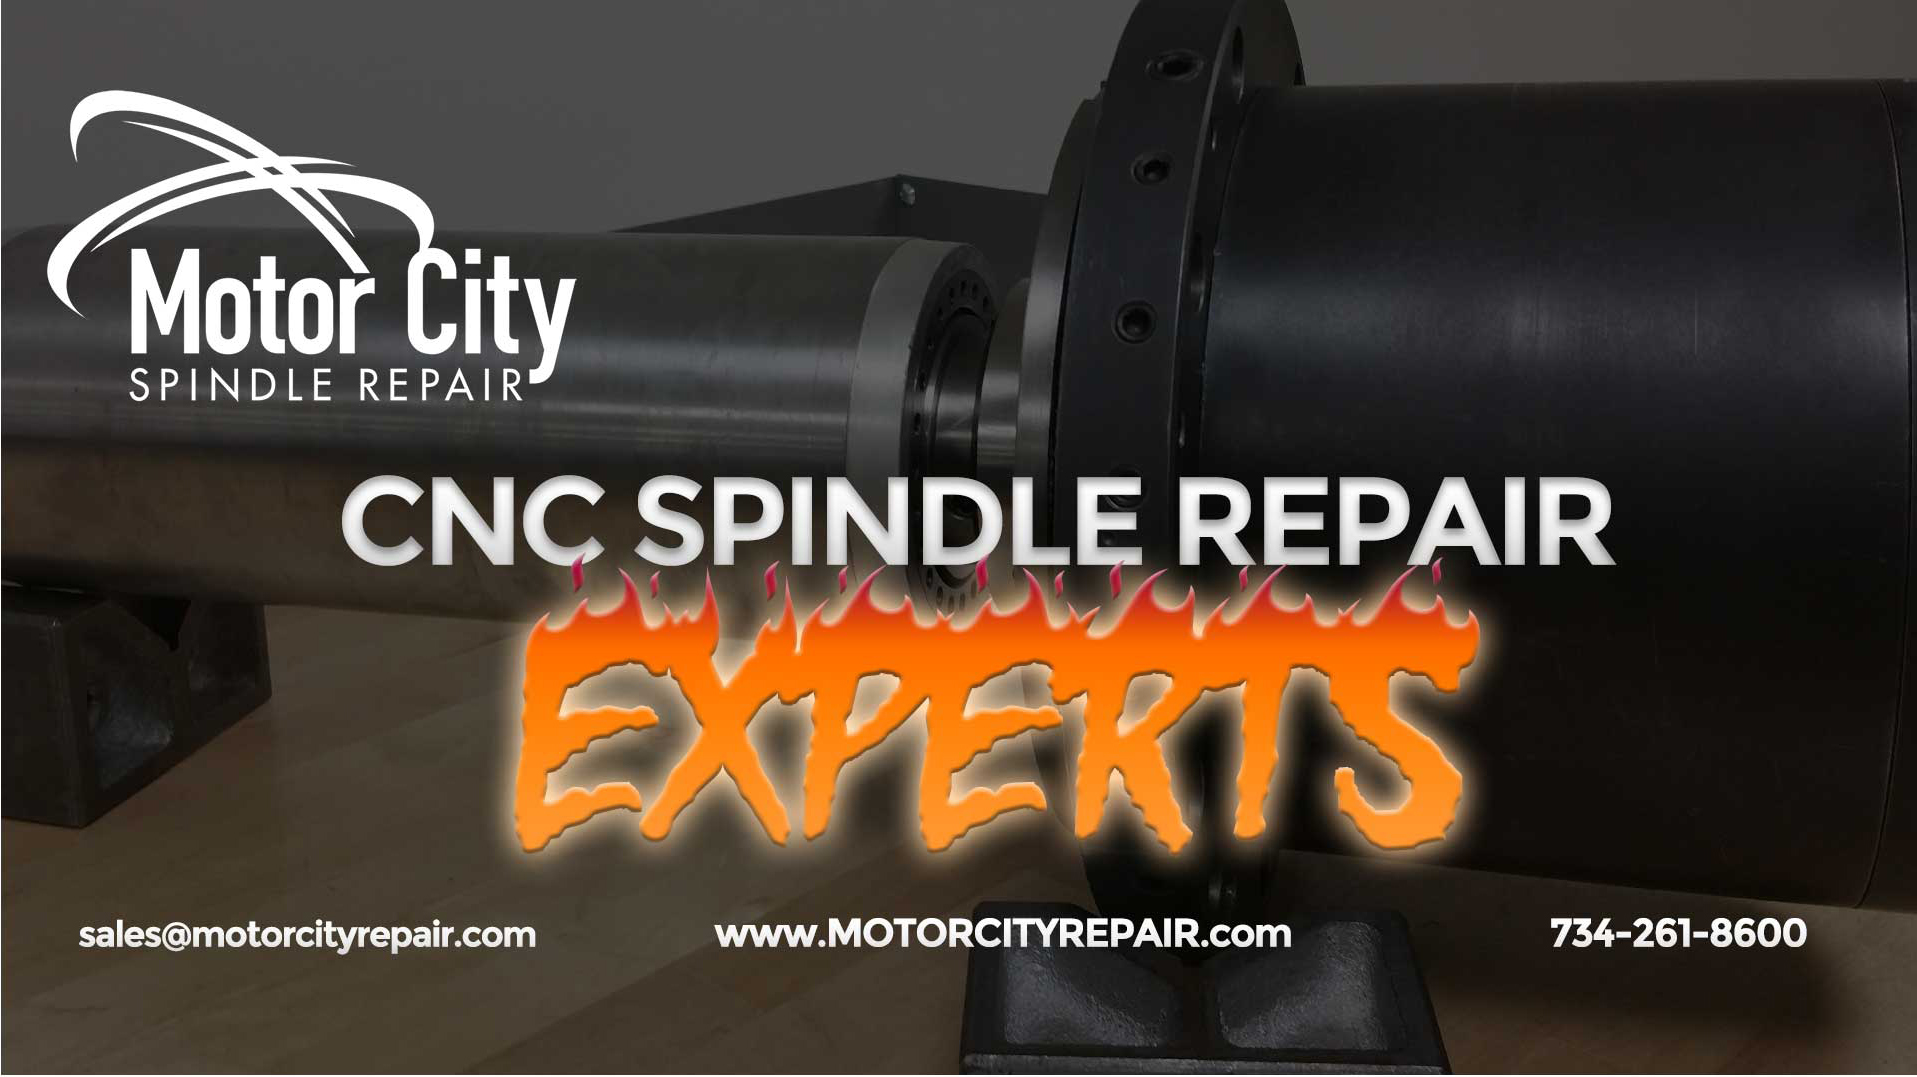 CNC Spindle Repair Experts